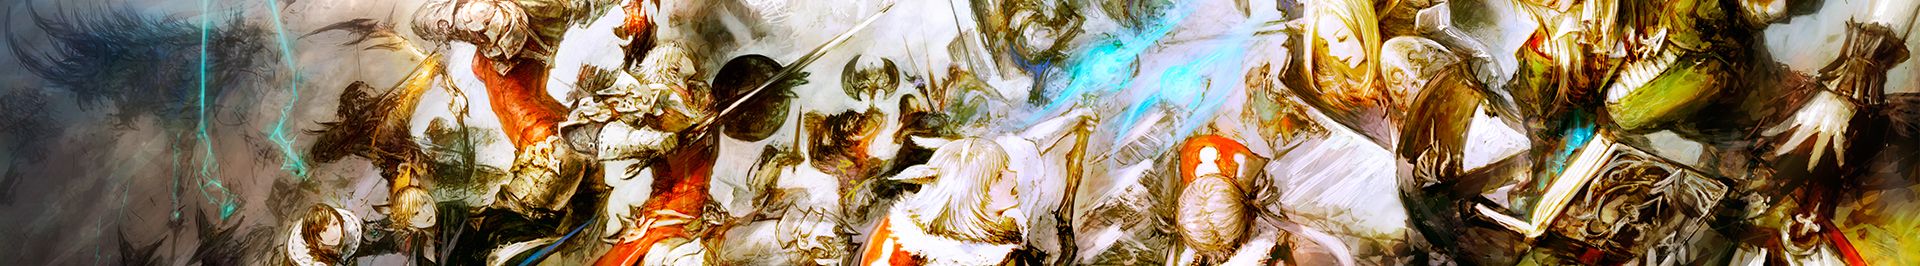 Final Fantasy 14 A Realm Reborn key artwork strip